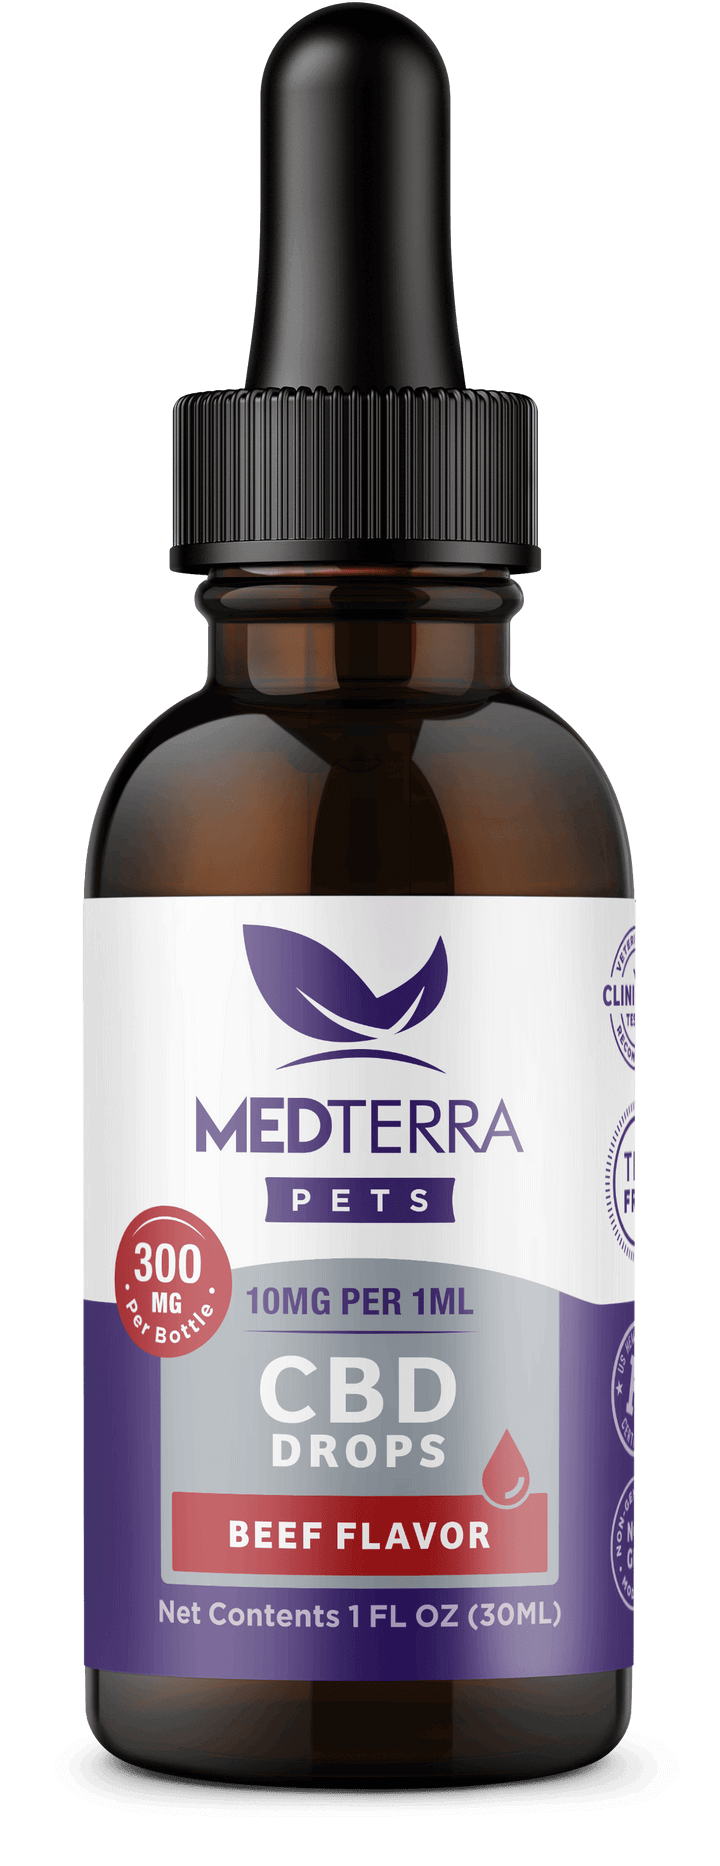 Medterra CBD Pet Oil 300 mg image_3